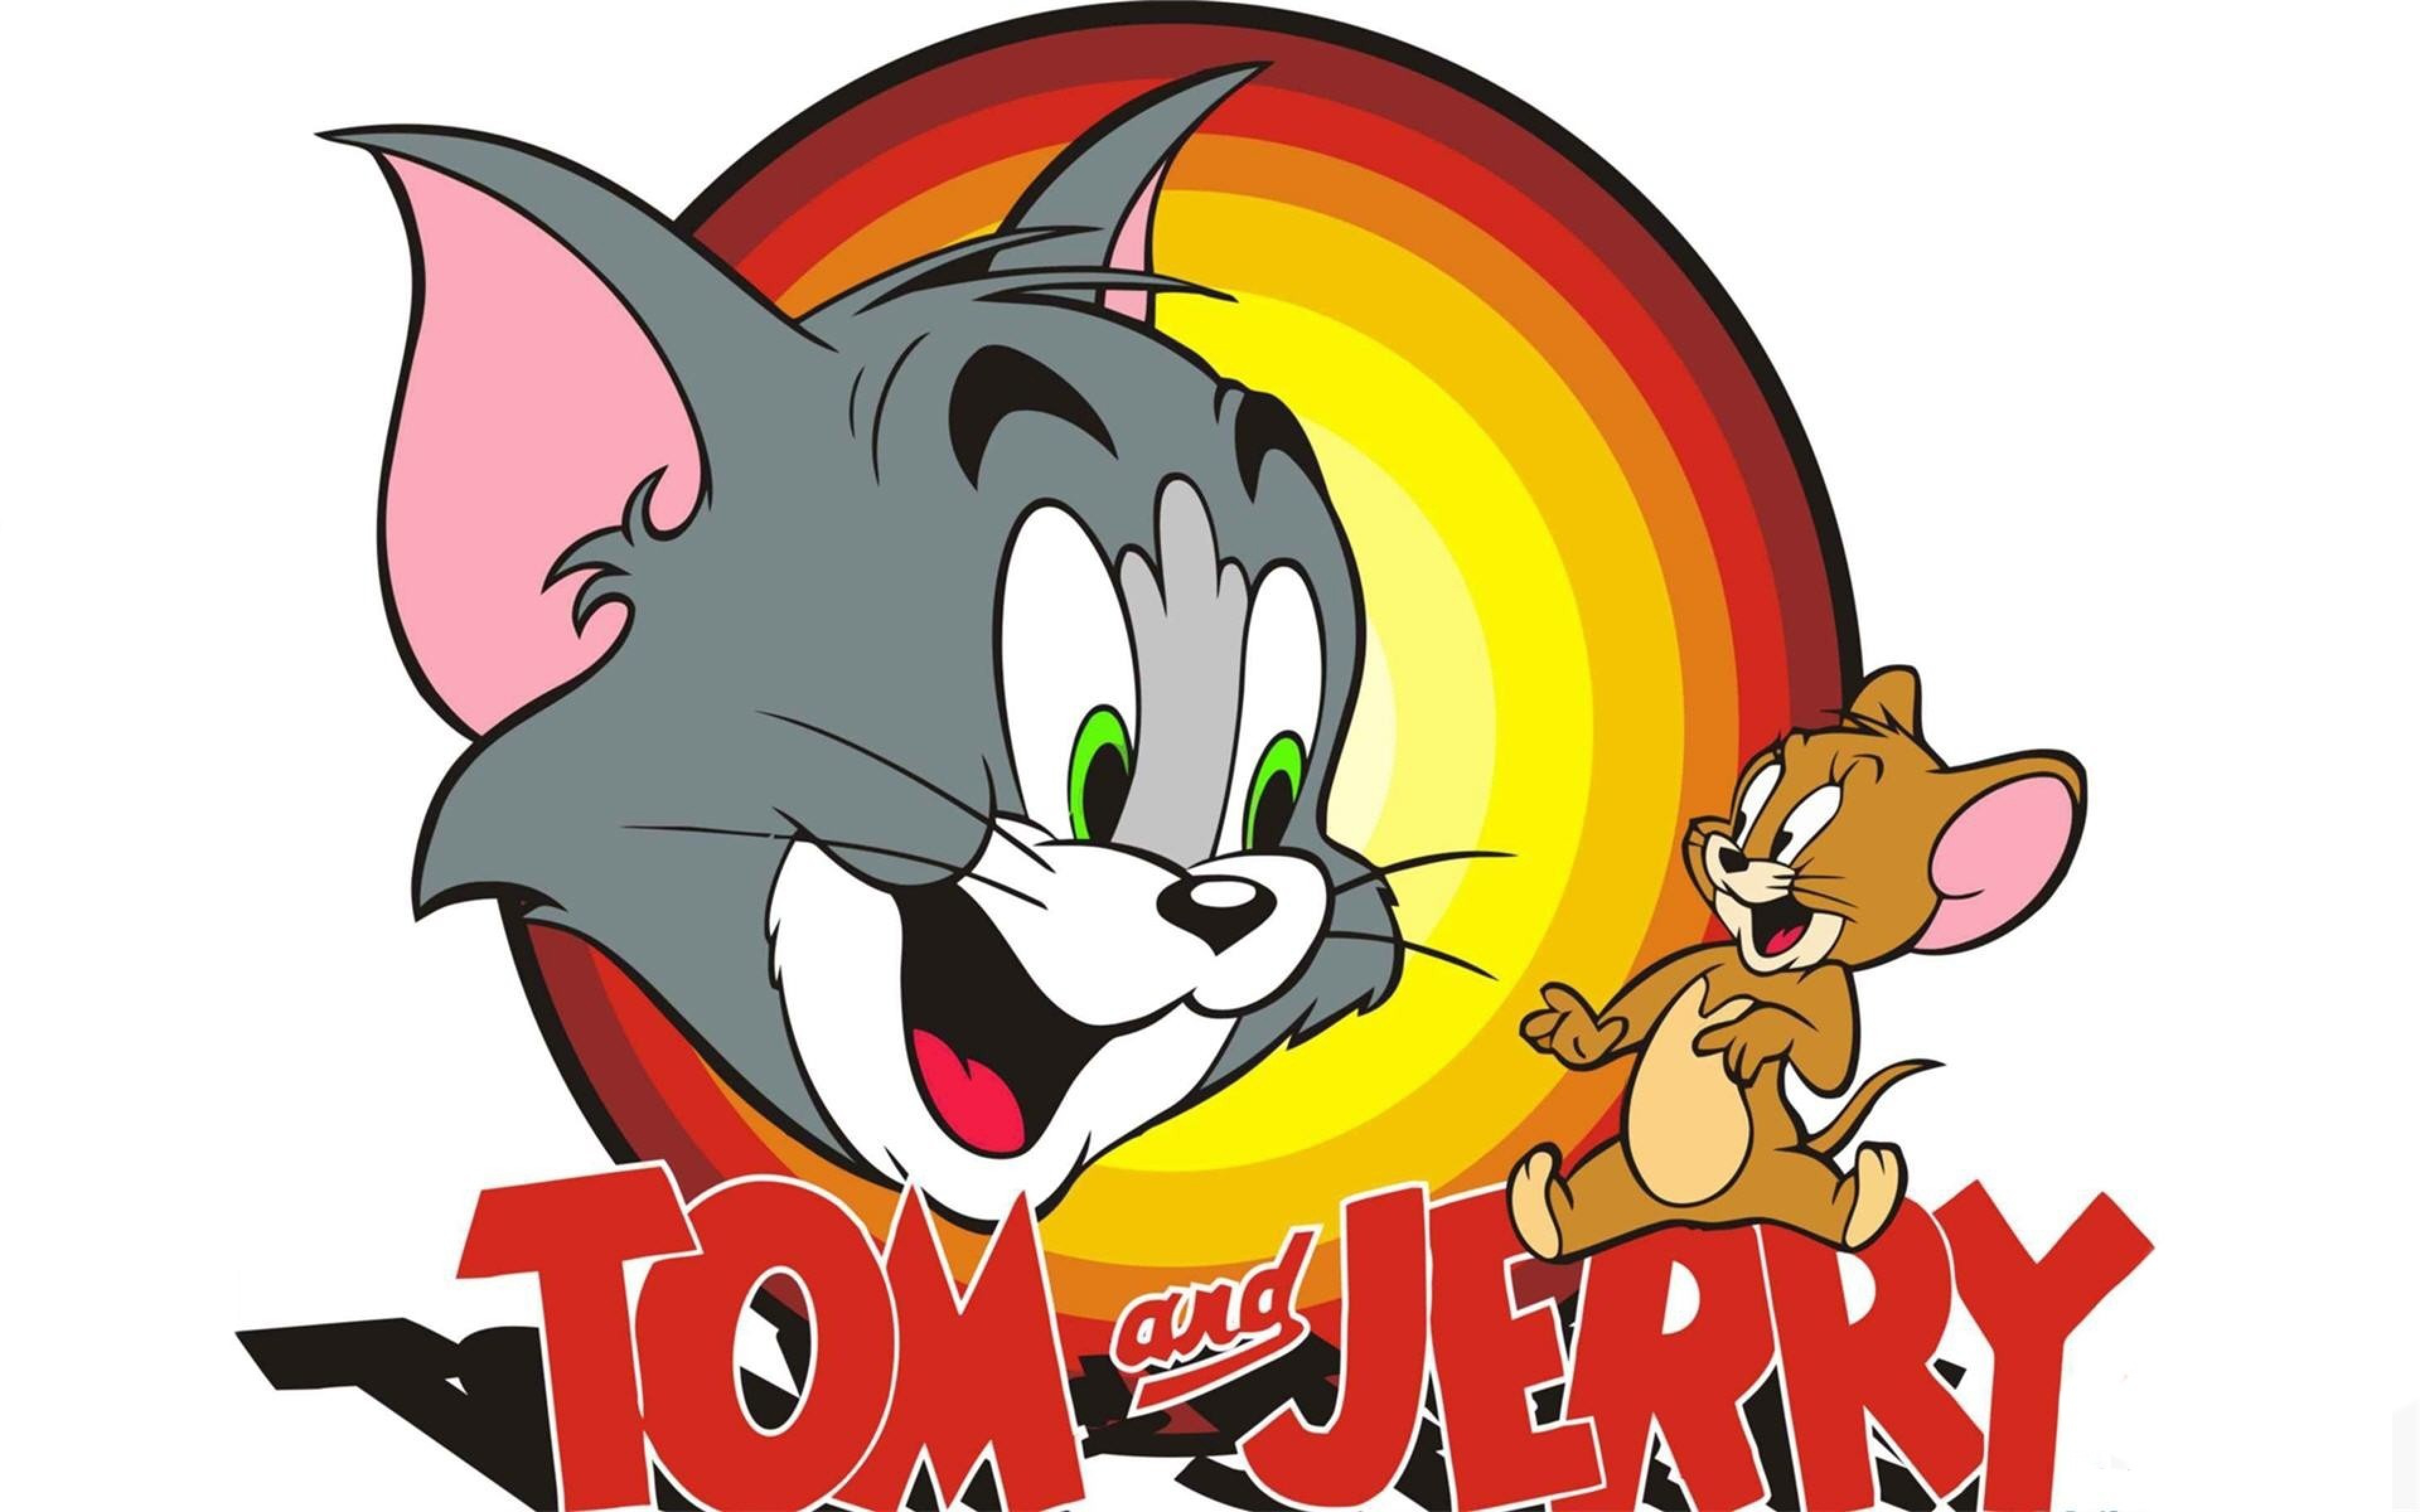 Jerry том и джерри. Том и Джерри Tom and Jerry. Tom and Jerry логотип. Том и Джерри 1988. Tom and Jerry 1.